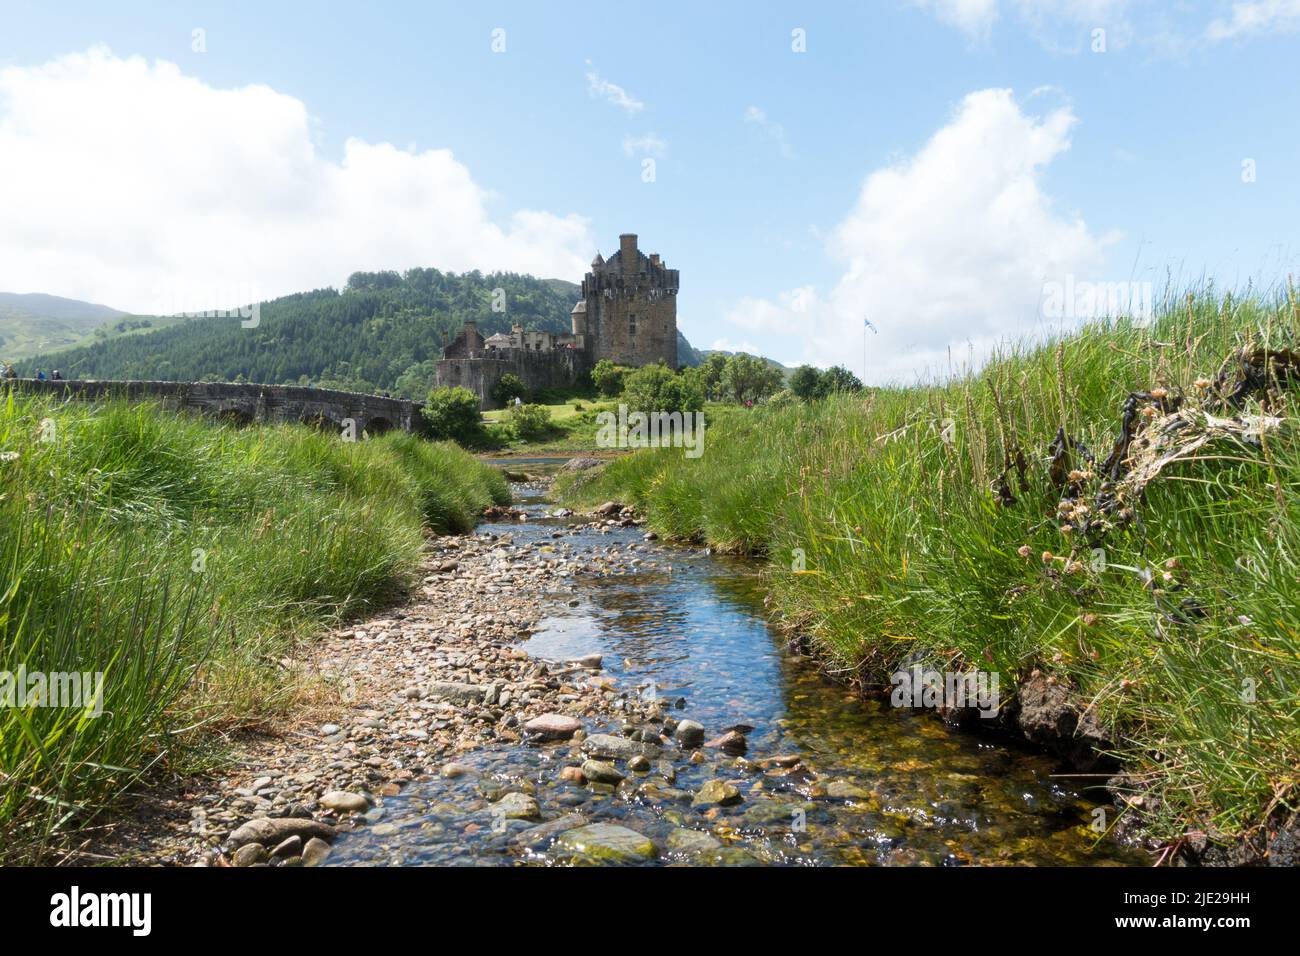 Scotland Eilean Donan Castle in Loch Duich, Highlands, UK Stock Photo